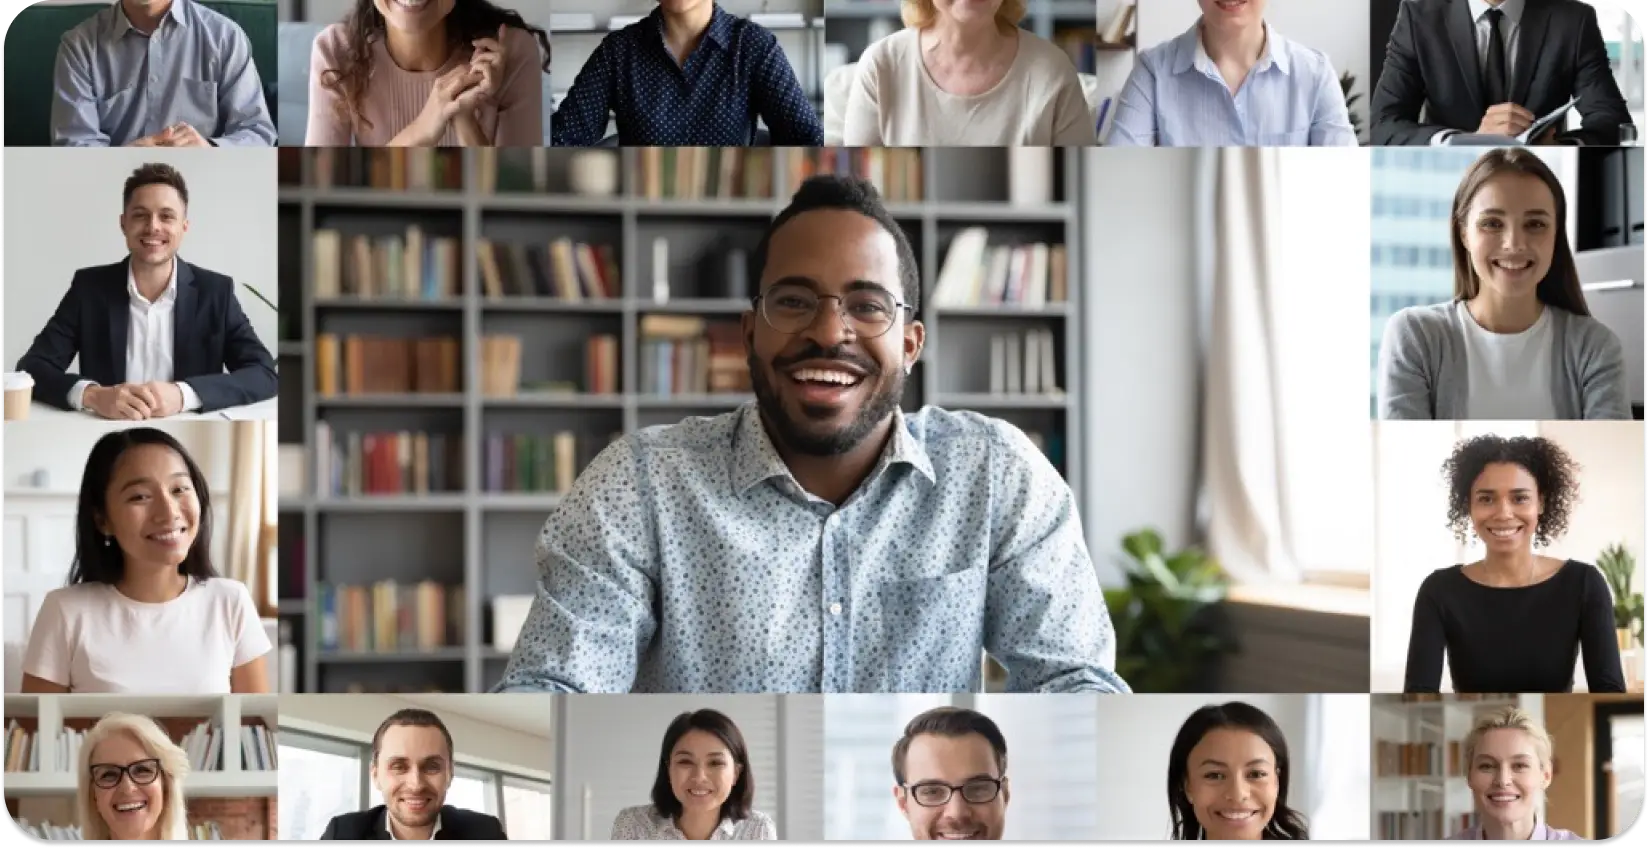 Koláž různých profesionálů na virtuálním setkání, která ukazuje inkluzivitu na pracovišti.